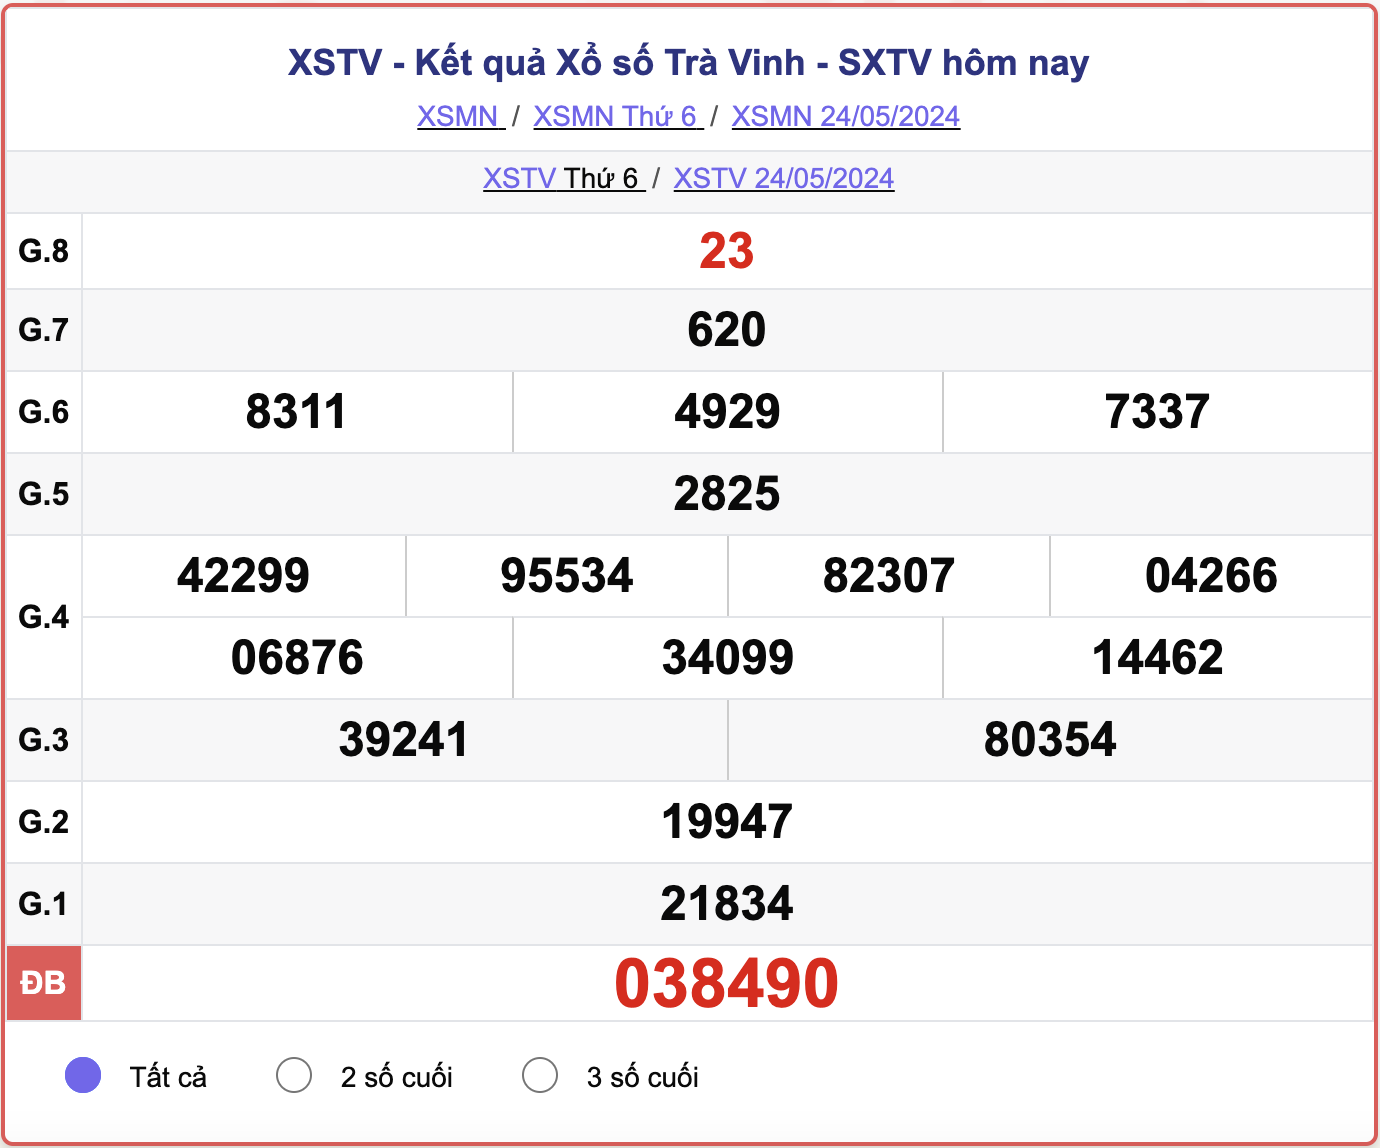 XSTV 24/5, kết quả xổ số Trà Vinh hôm nay 24/5/2024.